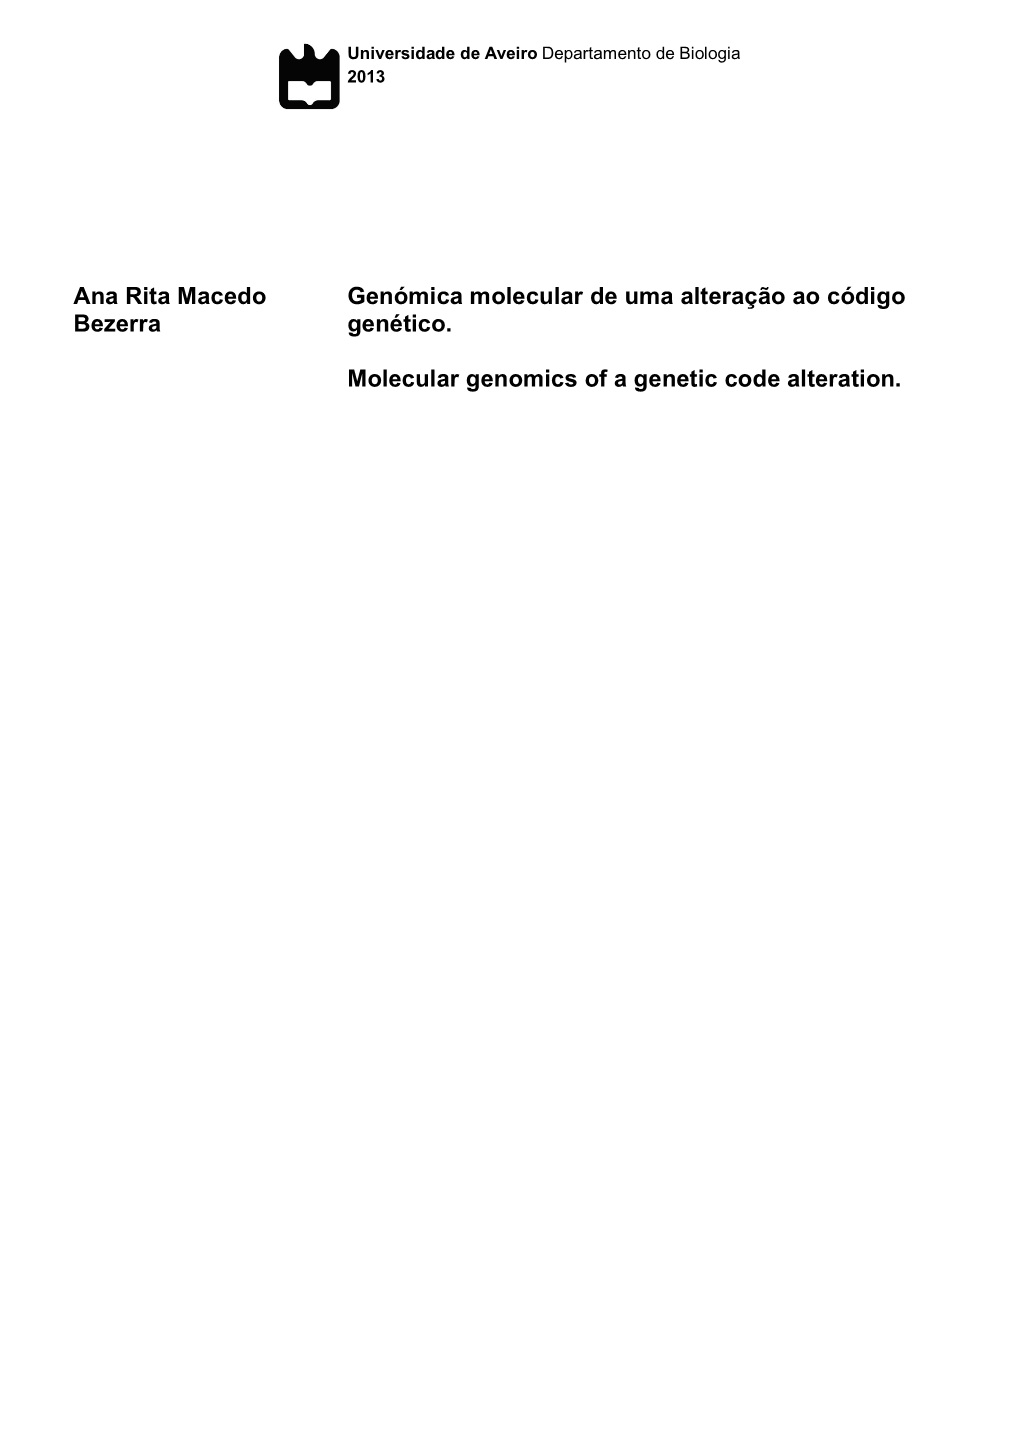 Ana Rita Macedo Bezerra Genómica Molecular De Uma Alteração Ao